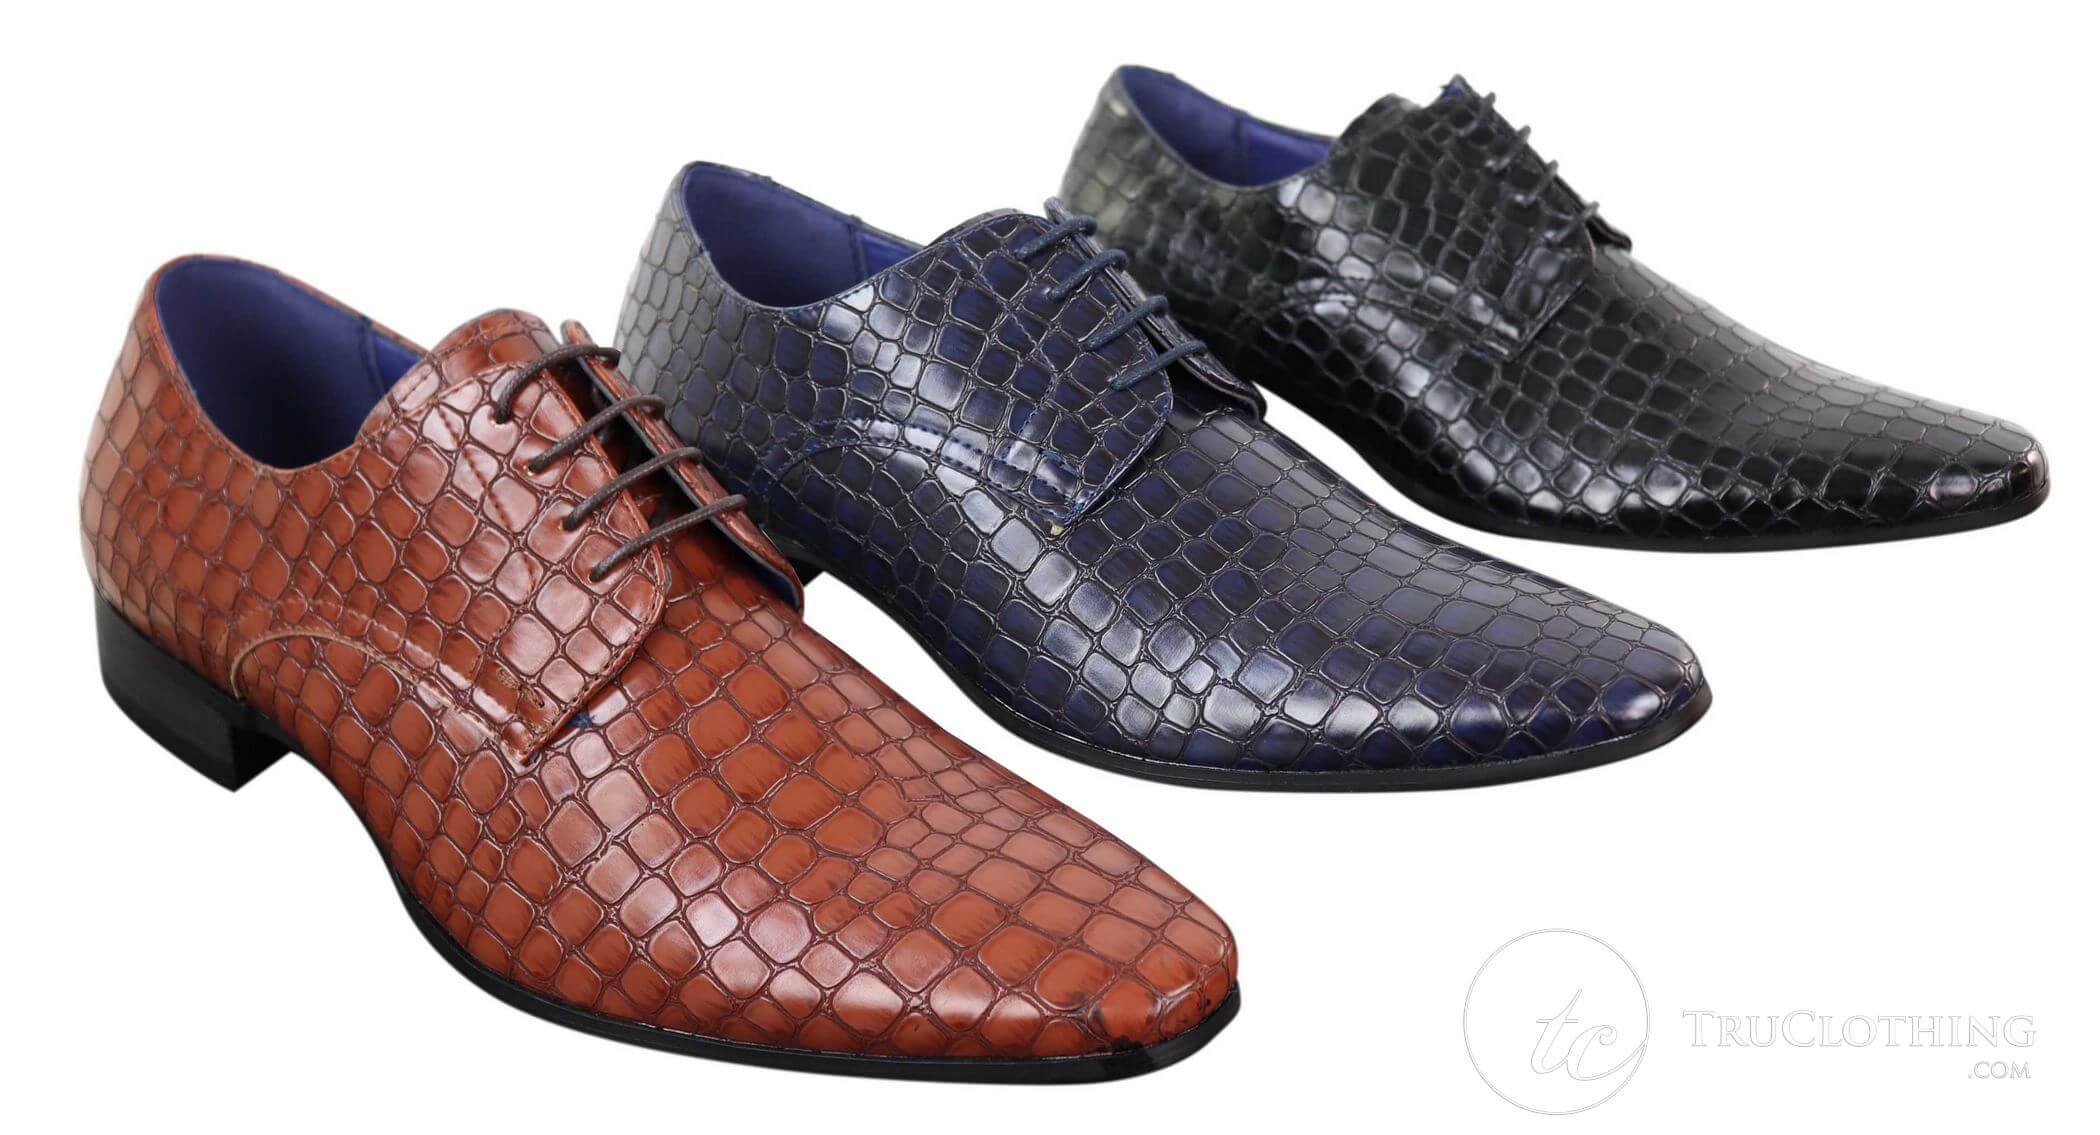 crocodile skin shoes uk